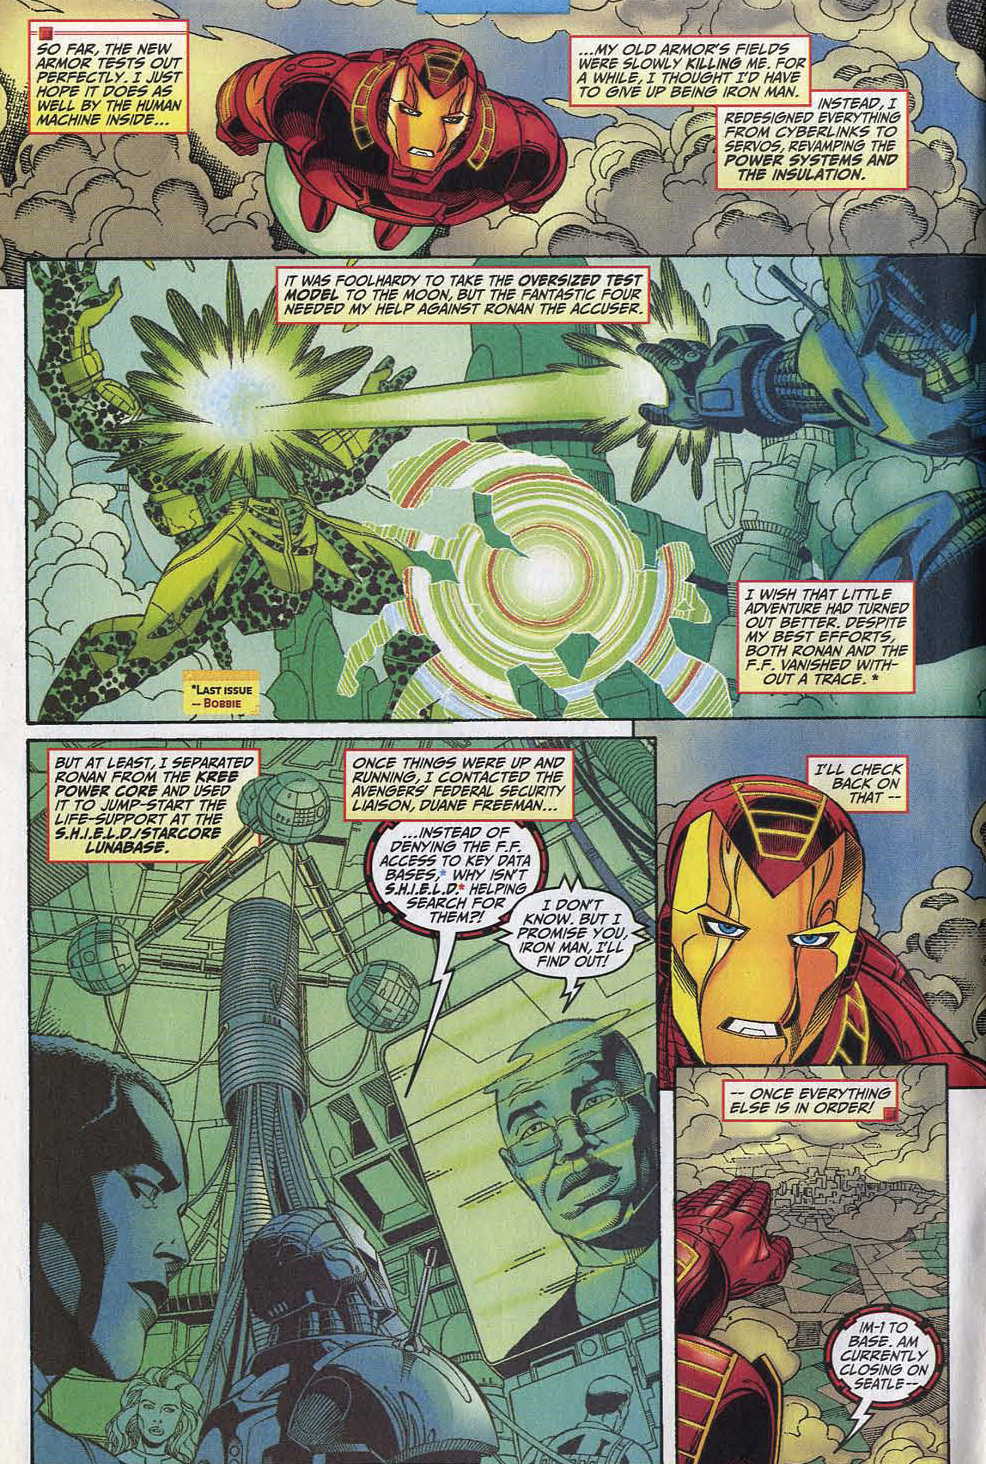 Iron Man (1998) 15 Page 4